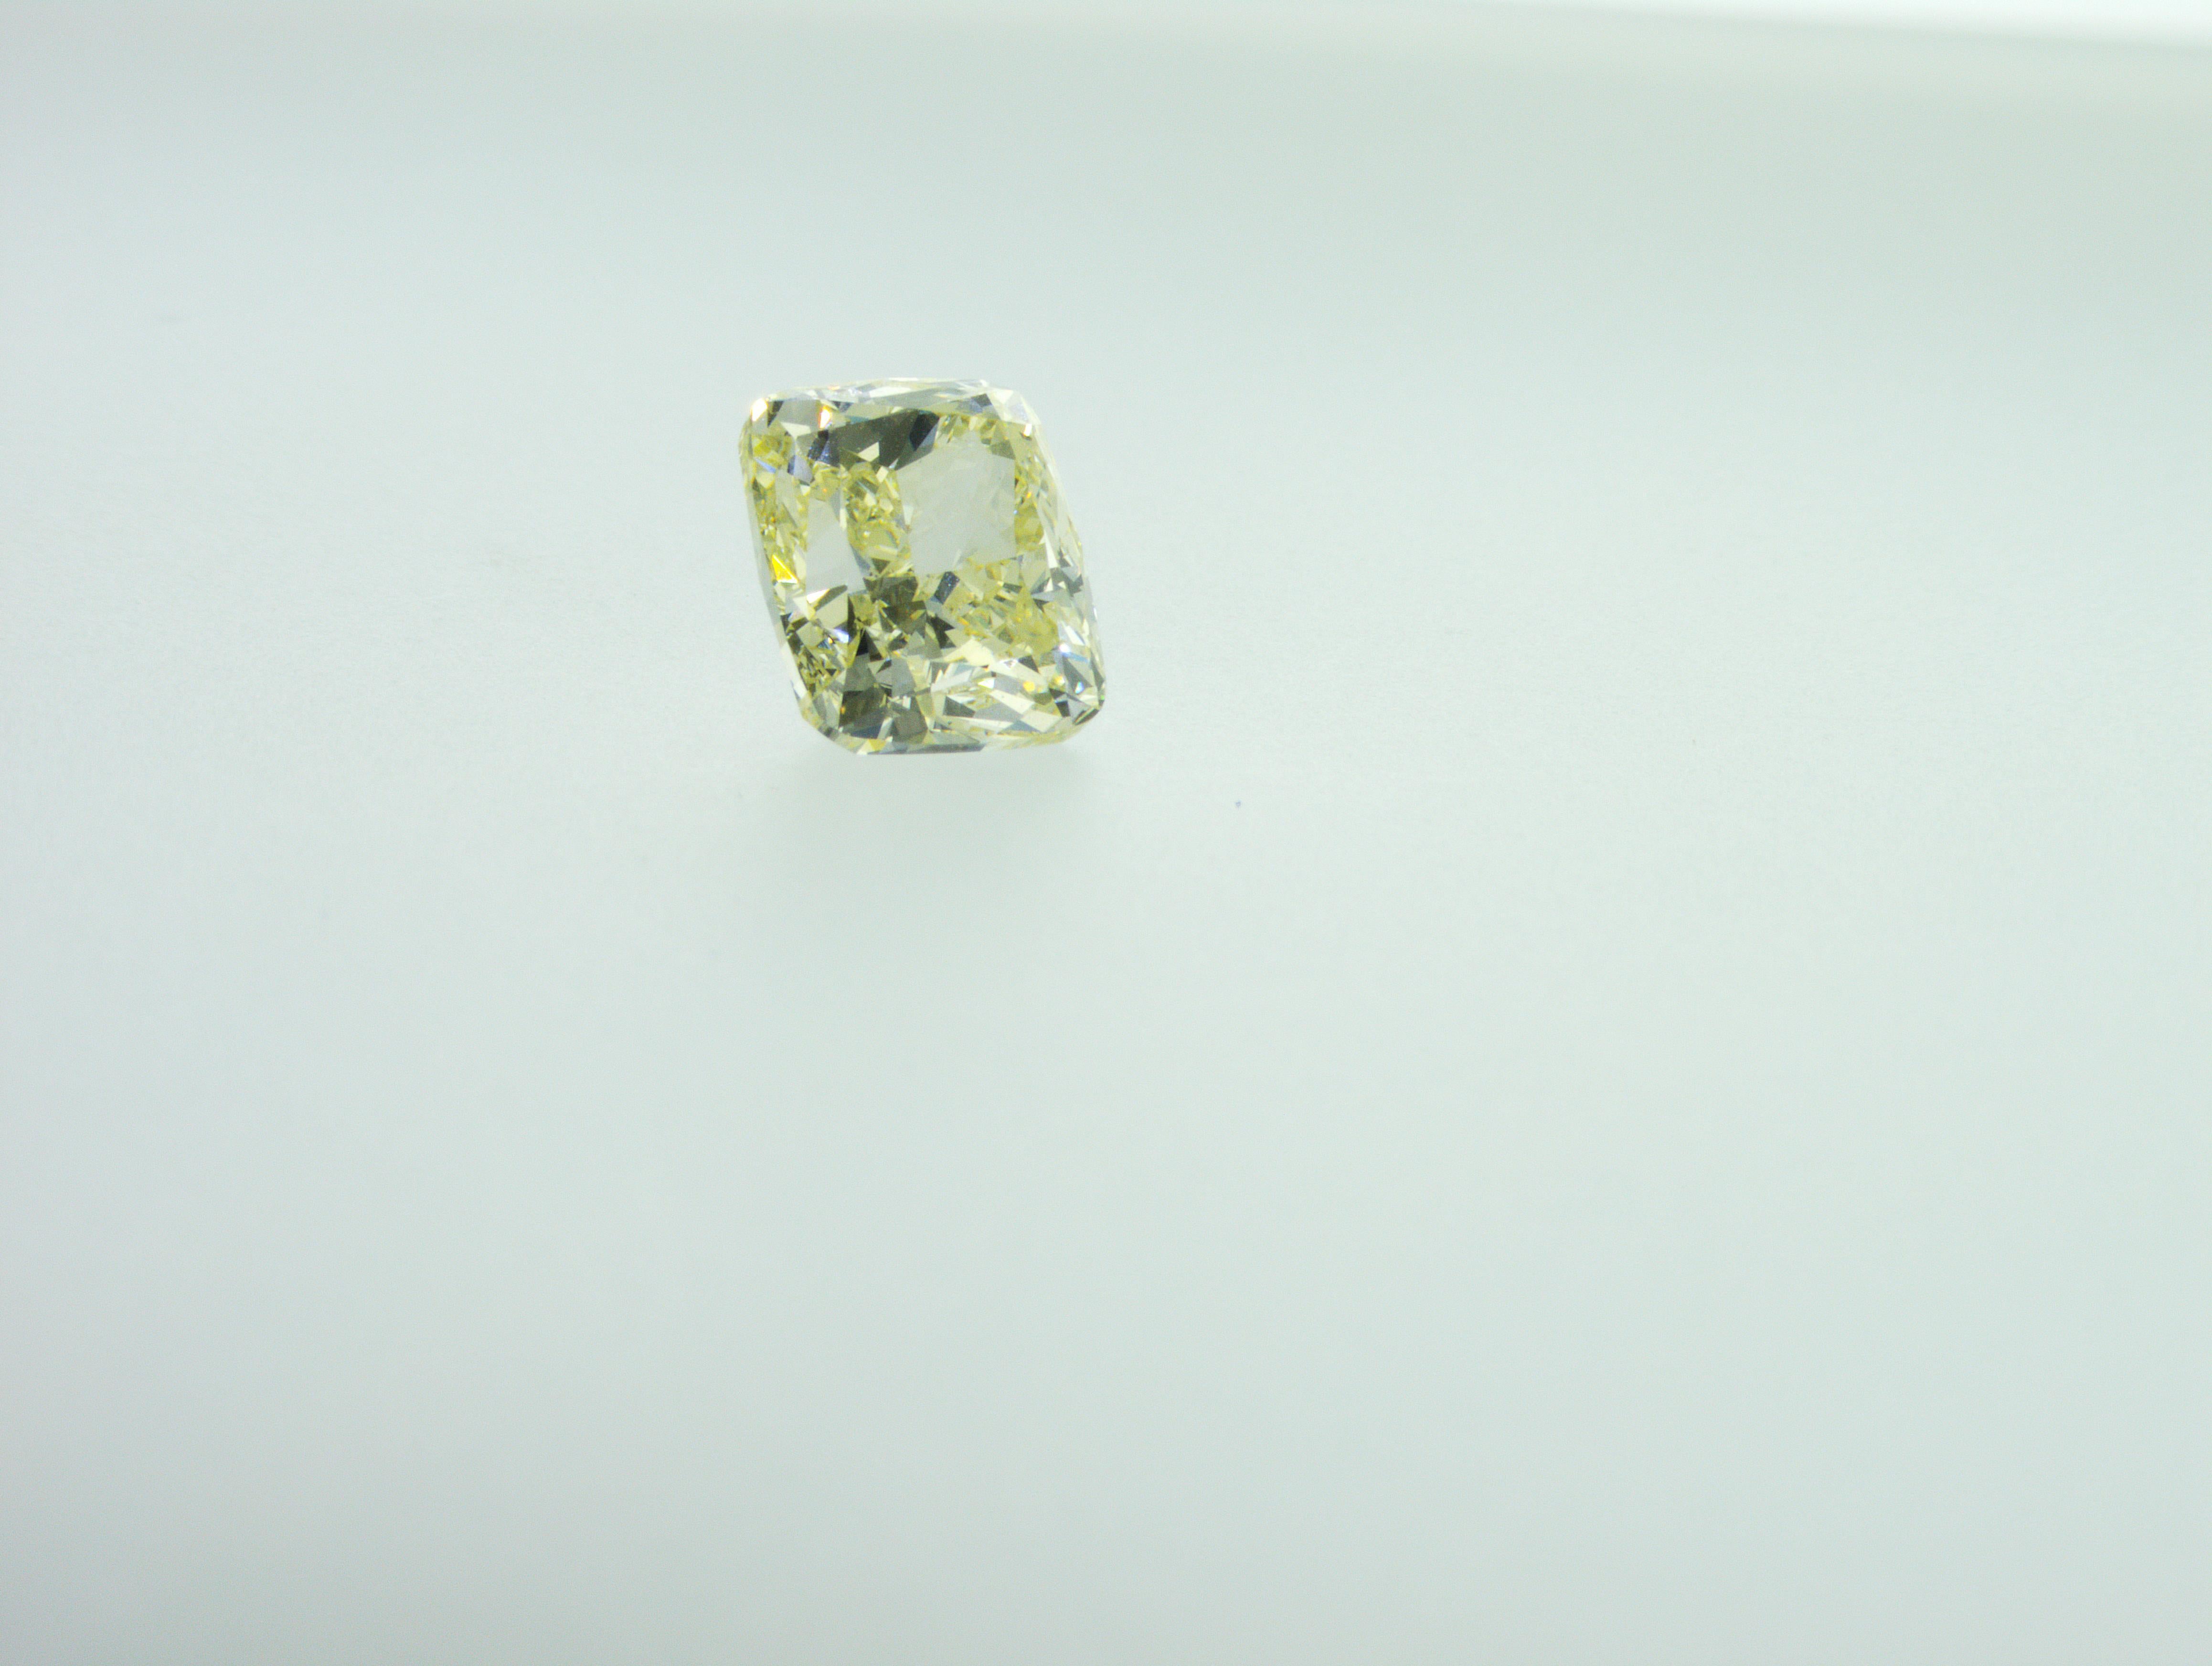 Nous sommes une société de production de diamants naturels située à Dubaï.
Poids : 3,01ct
Forme : Coussin
Couleur : rare Y-Z (Jaune)
Clarté : VVS2
Polonais : Excellent
Symm : Très bon
Dimensions (mm) : 8,47 x 7,31 x 5,73
Tous nos diamants avec